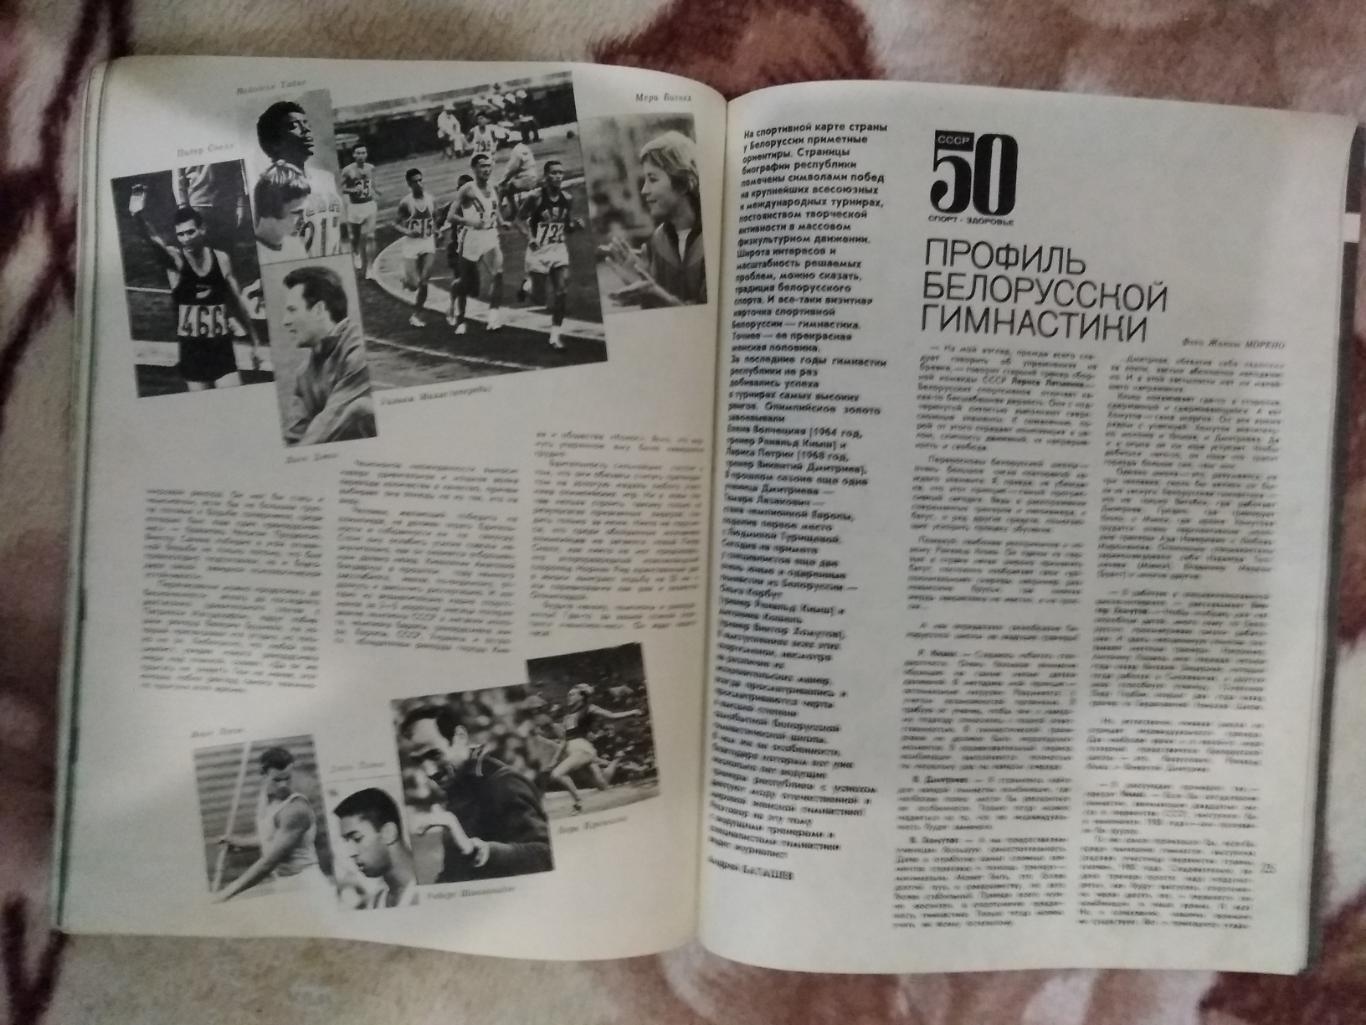 Журнал.Физкультура и спорт № 8 1972 г. (ФиС). 3